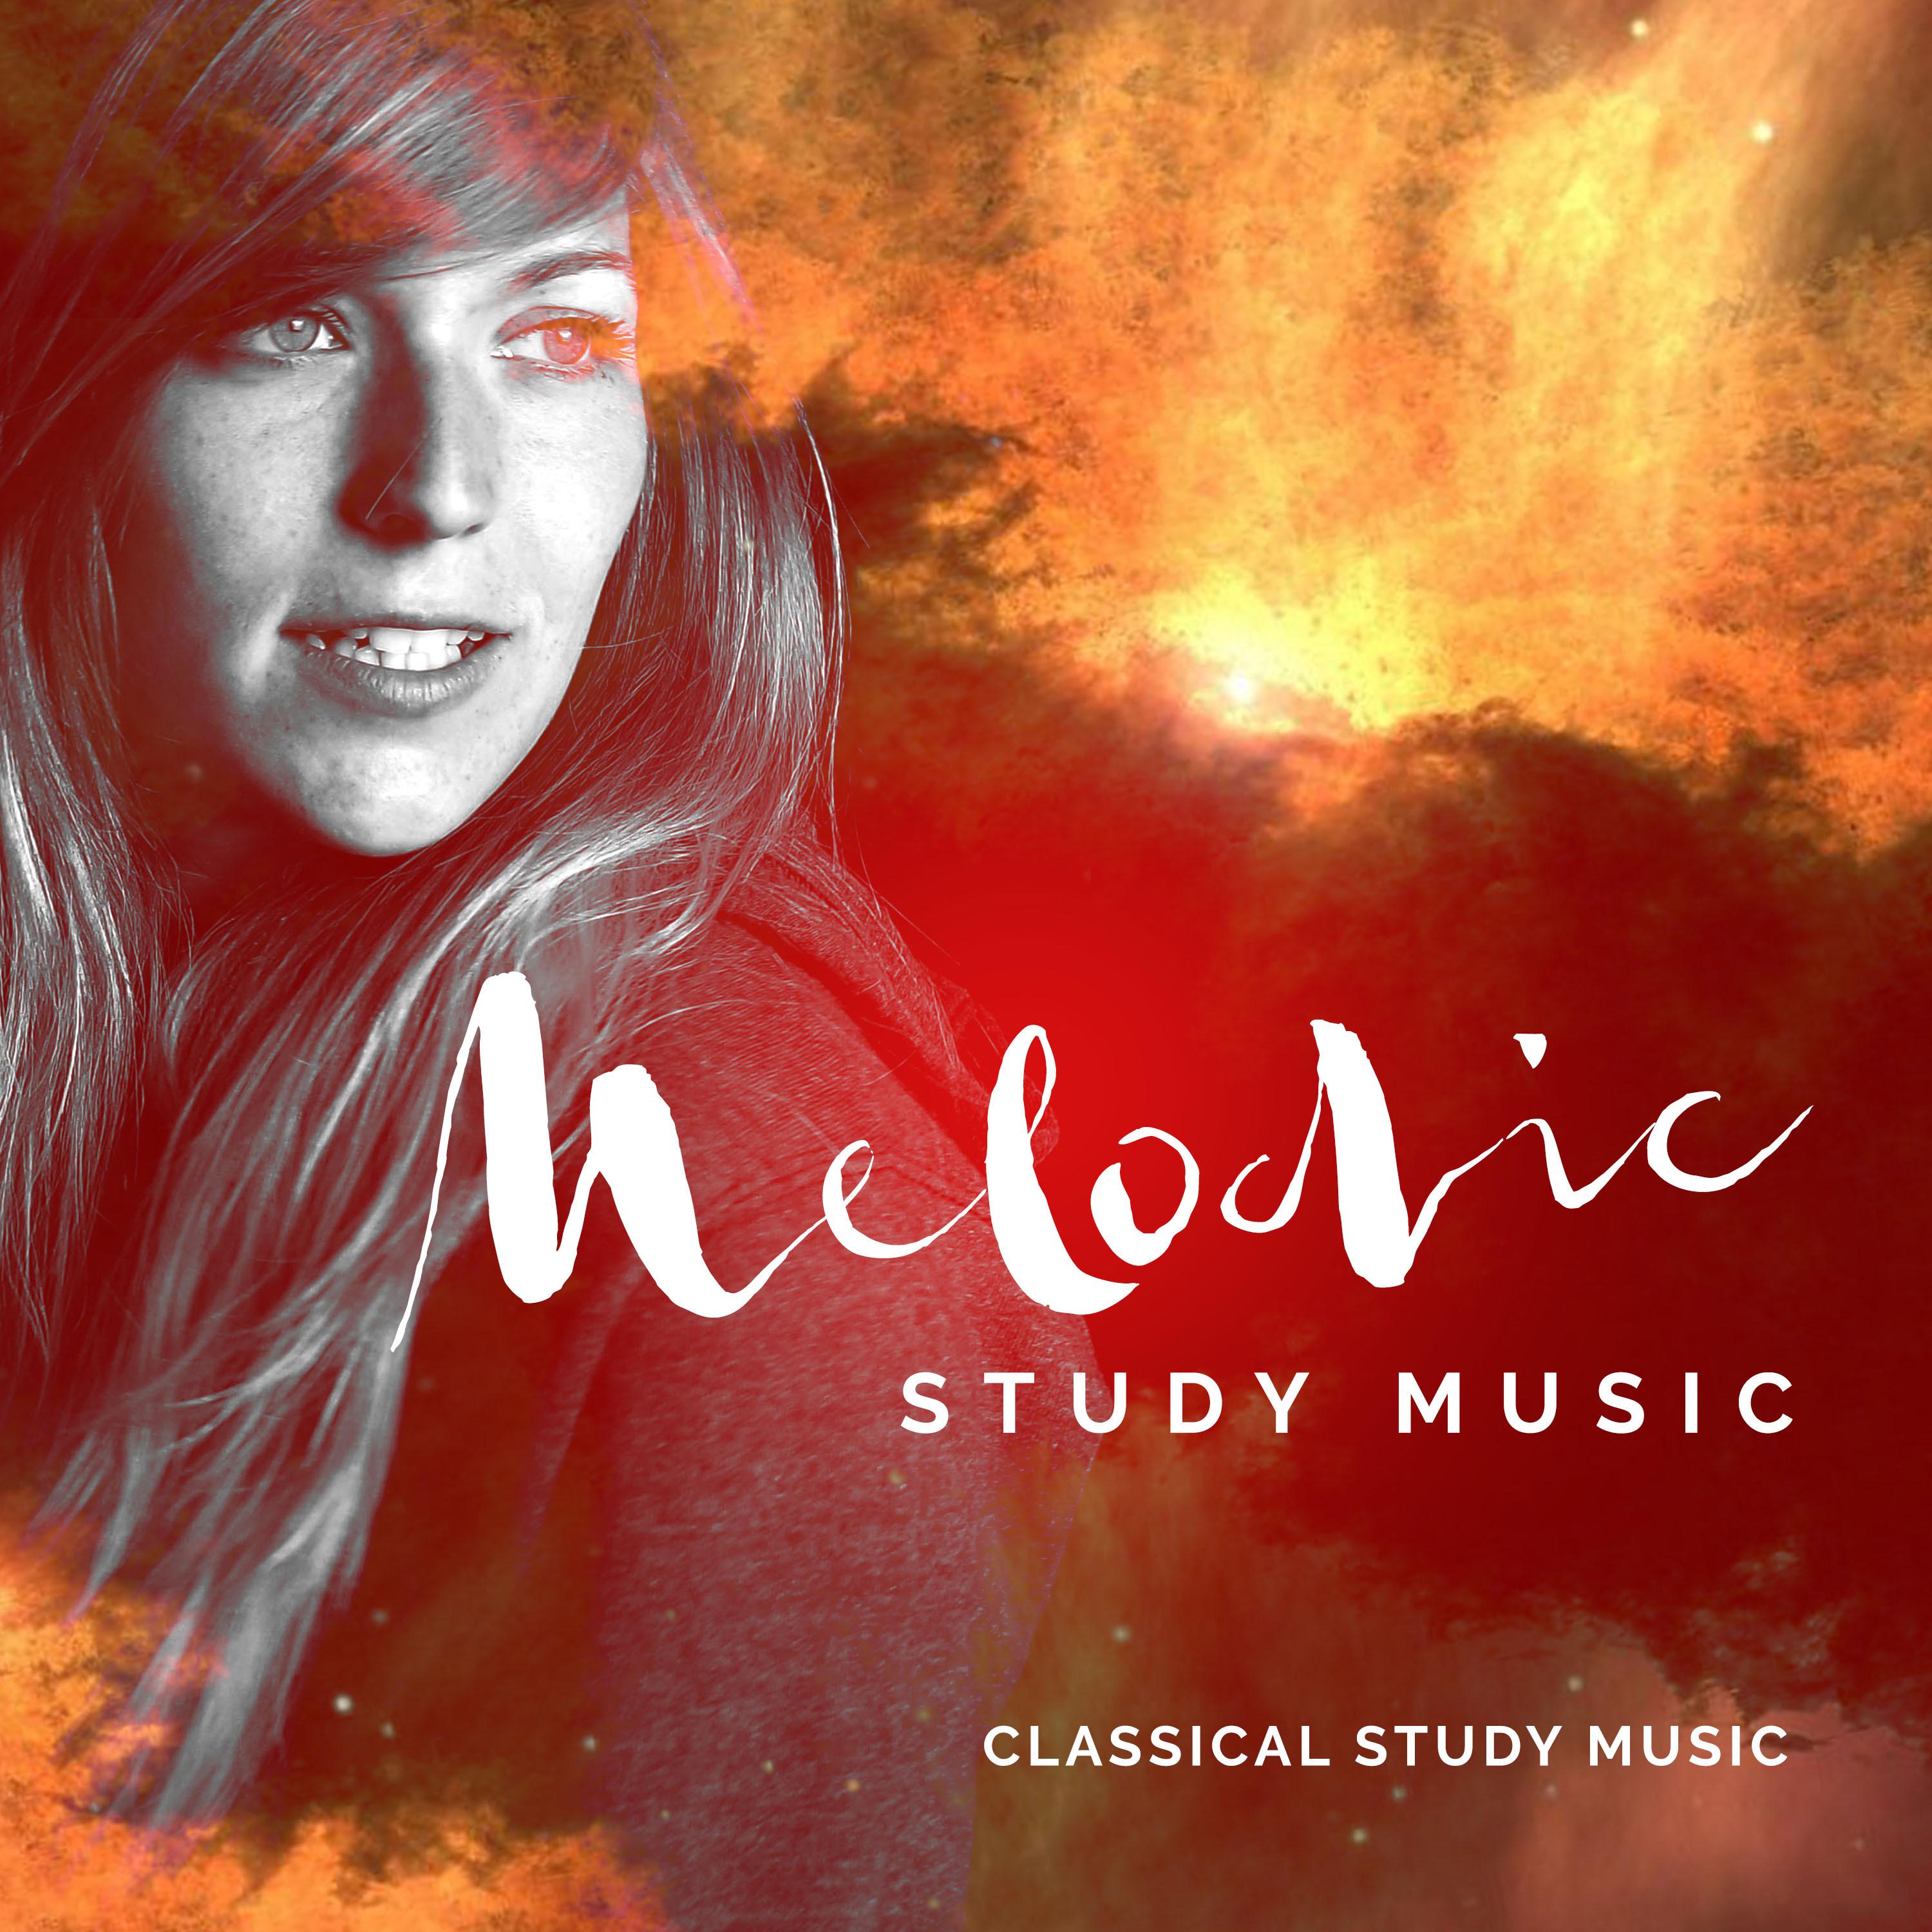 Melodic Study Music